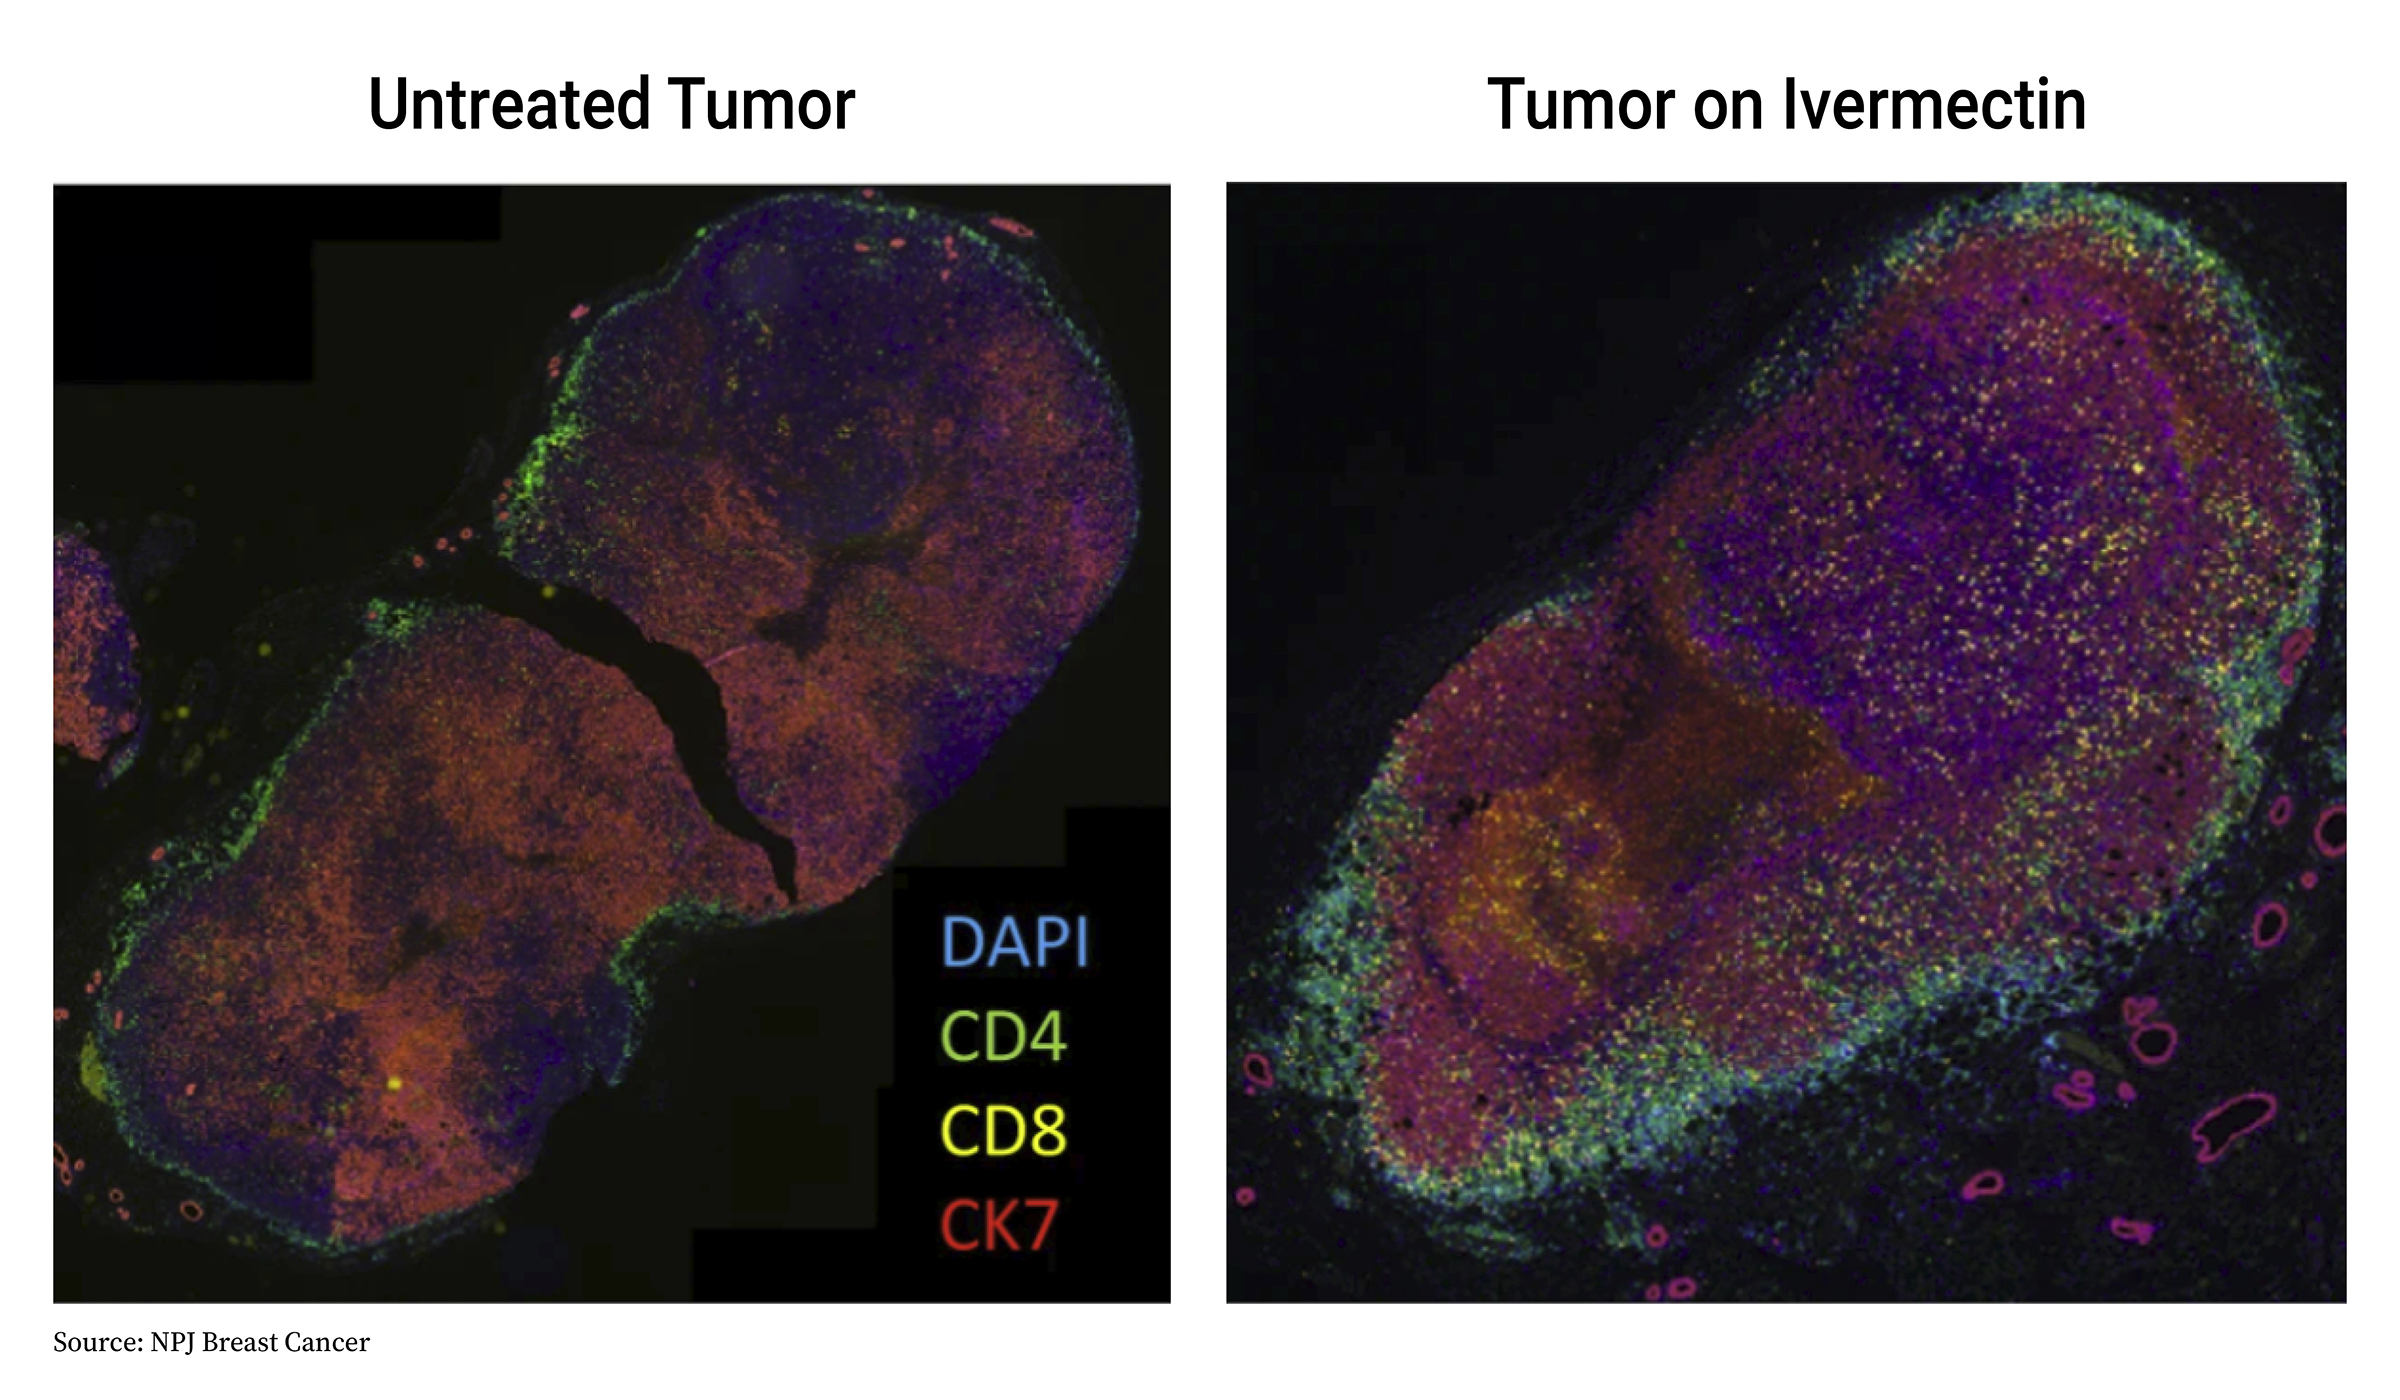 Tế bào miễn dịch CD4+ (xanh lá cây), tế bào T CD8+ (vàng) và tế bào ung thư (đỏ) được thể hiện qua nhuộm màu. (Được sự cho phép của NPJ Breast Cancer)